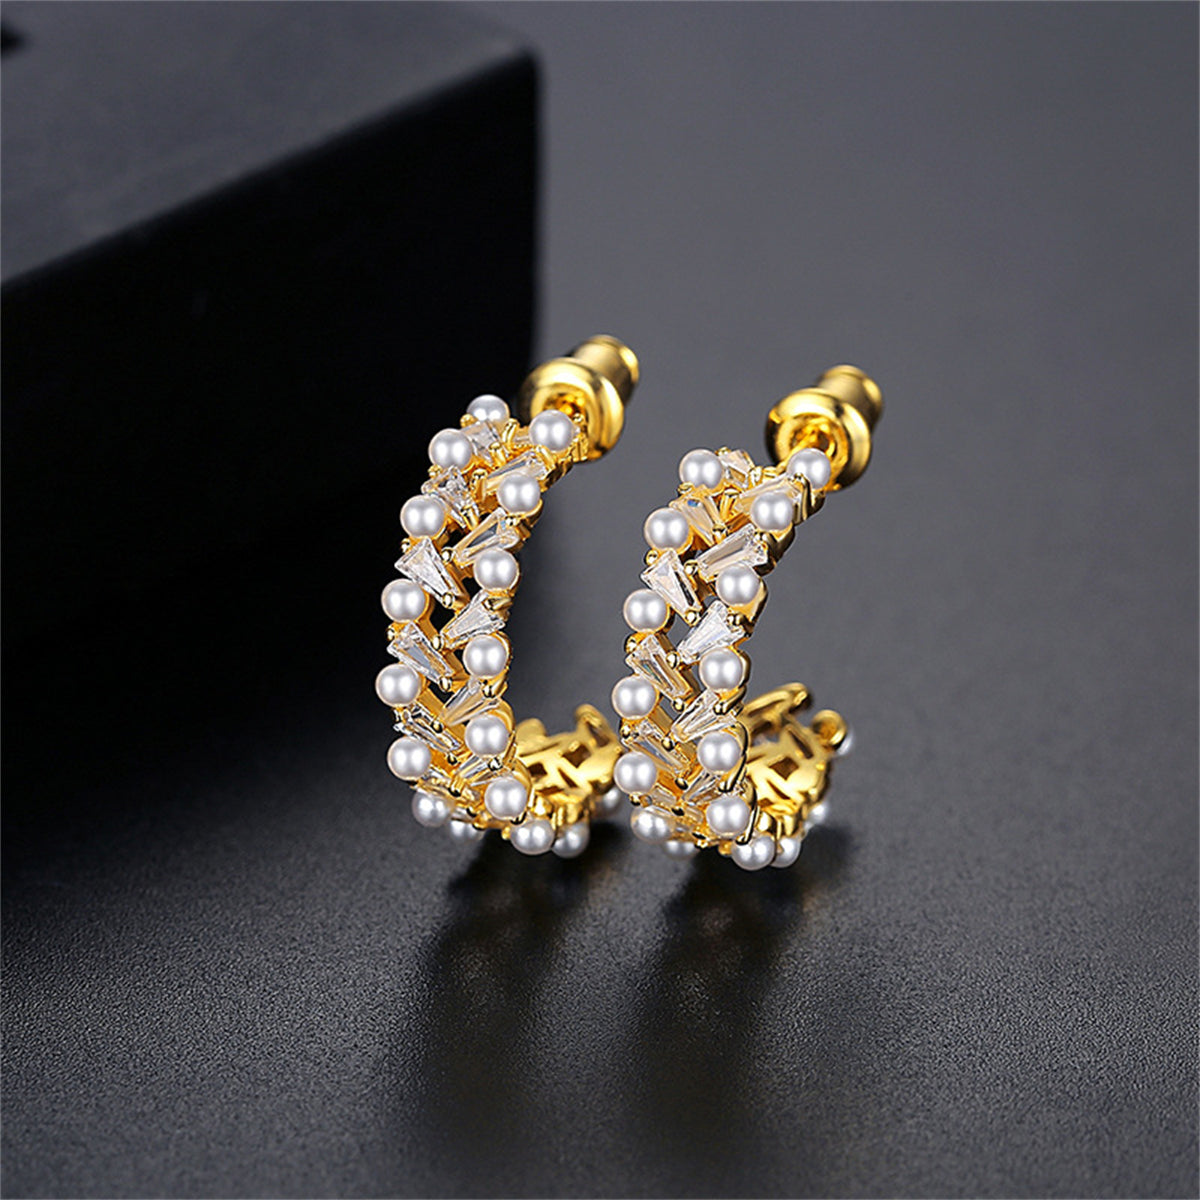 Crystal & Pearl 18K Gold-Plated C-Shape Hoop Earrings